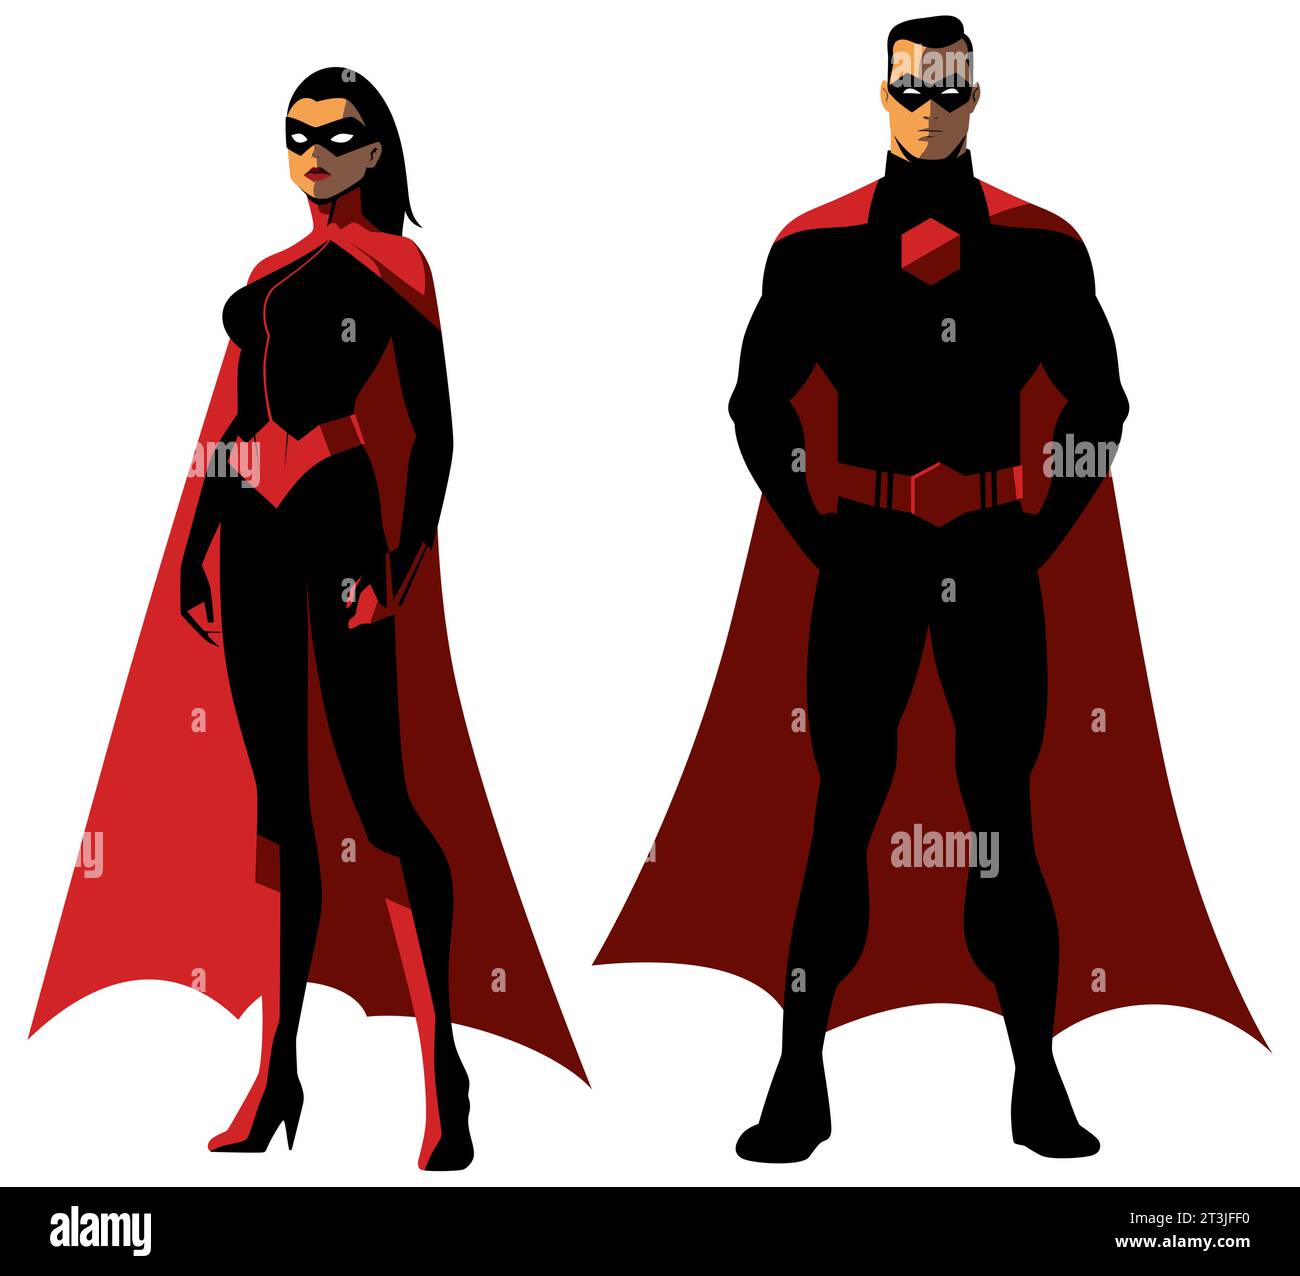 Zwei Superhelden stehen souverän in fließenden roten Umhängen. Die Frau mit ihrer auffälligen schwarzen Maske und ihrem anliegenden Anzug stellt das stoische Verhalten des Mannes im Gegensatz. Stock Vektor